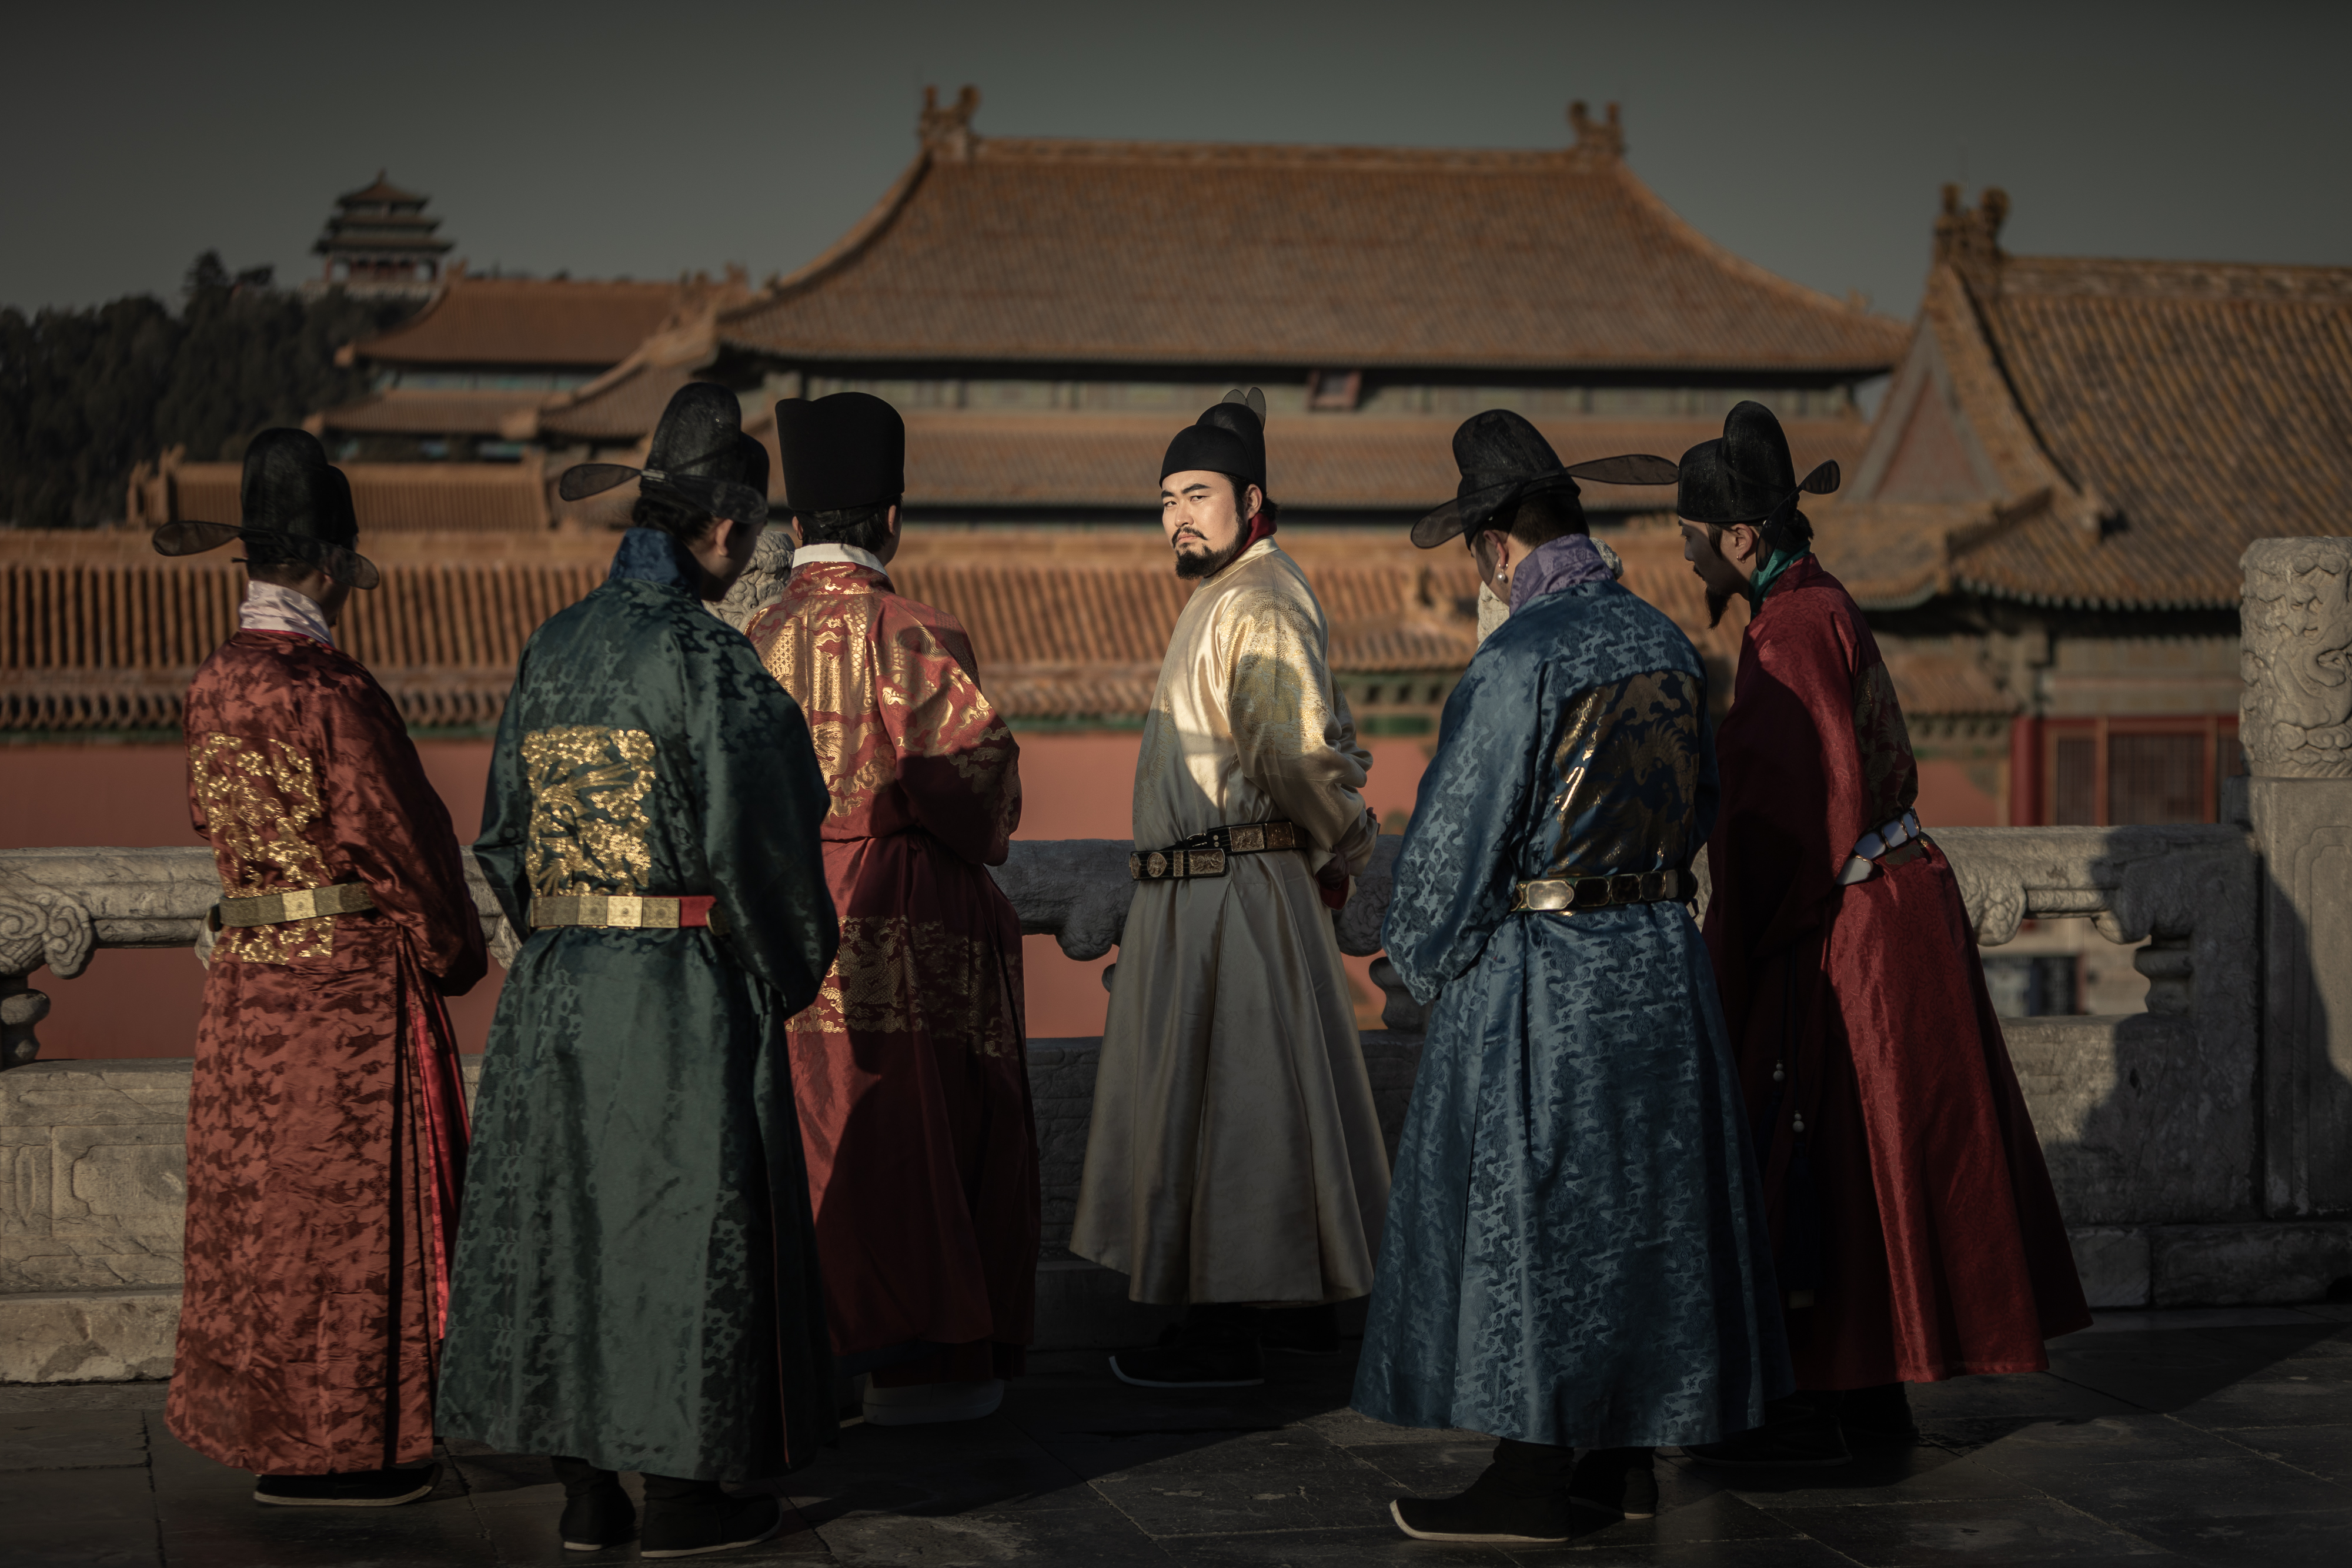 2020年冬天，王轩与几位服饰史爱好者在故宫拍摄，再现六百年前大明风华。摄影/王轩